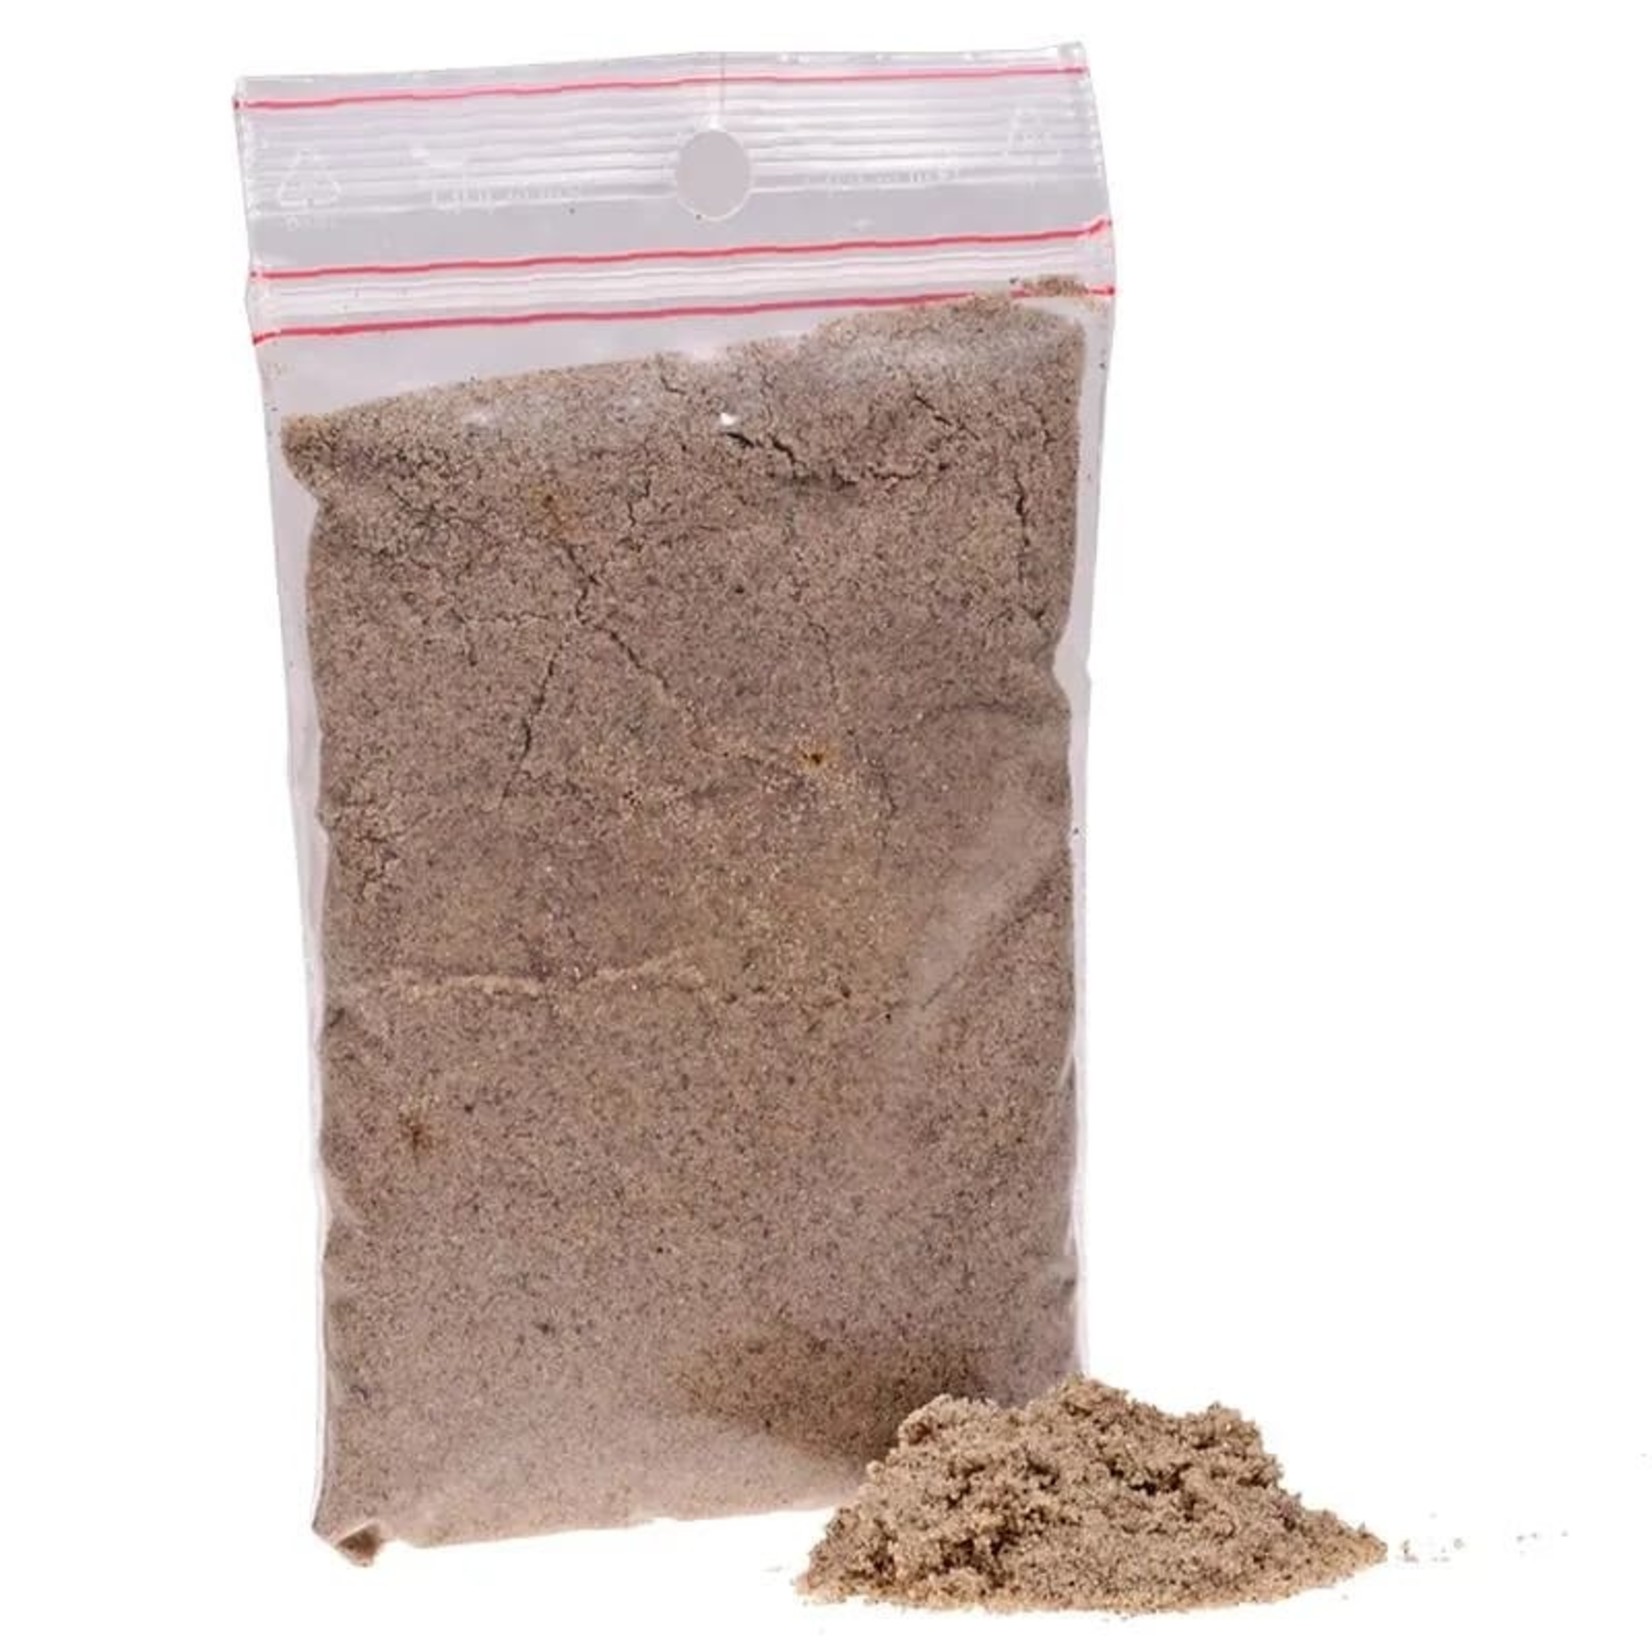 Zakje zand ongeveer 130 gram